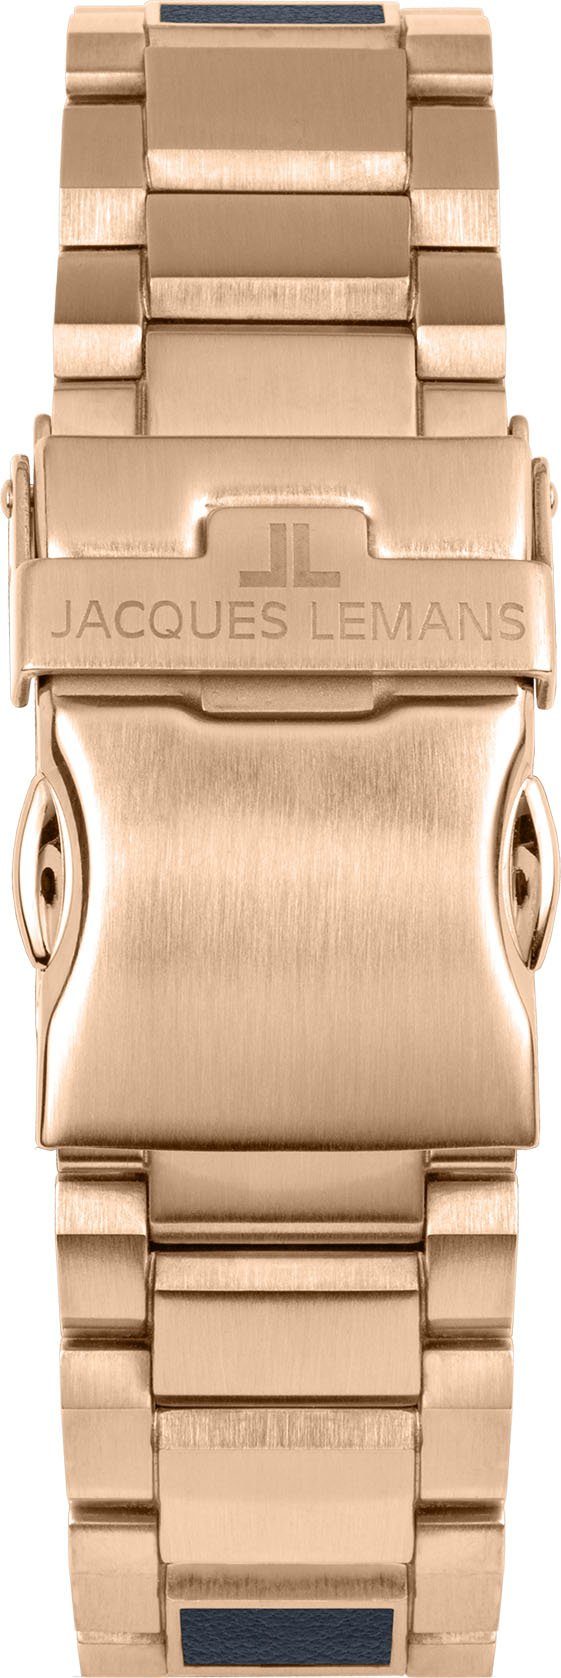 Jacques Lemans Solaruhr 1-2116F Eco Power